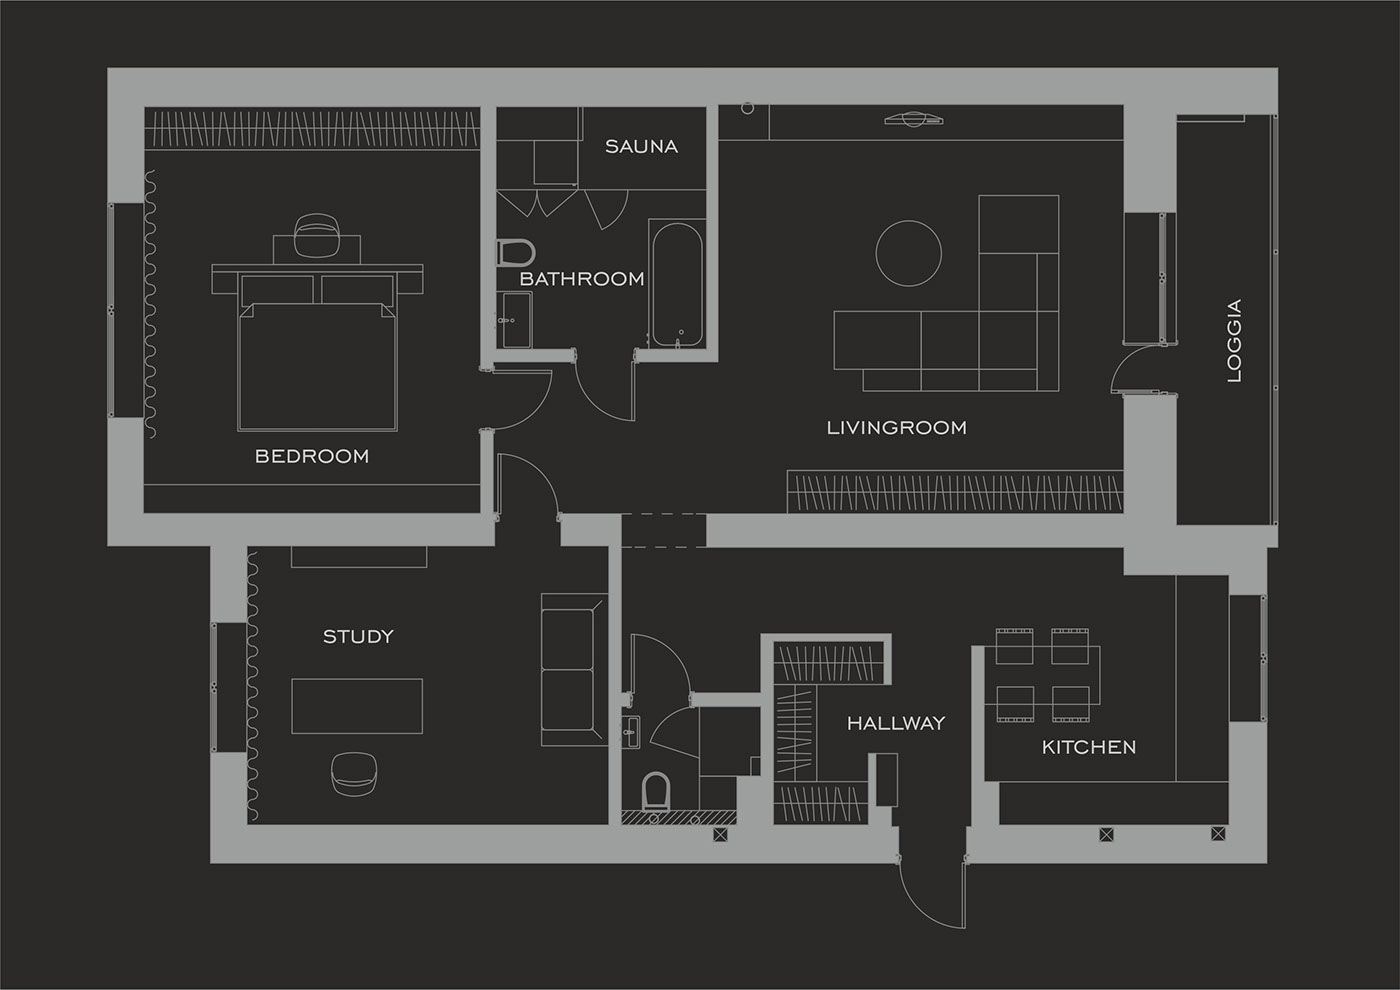 Дизайн класса люкс: 6 темных интерьеров